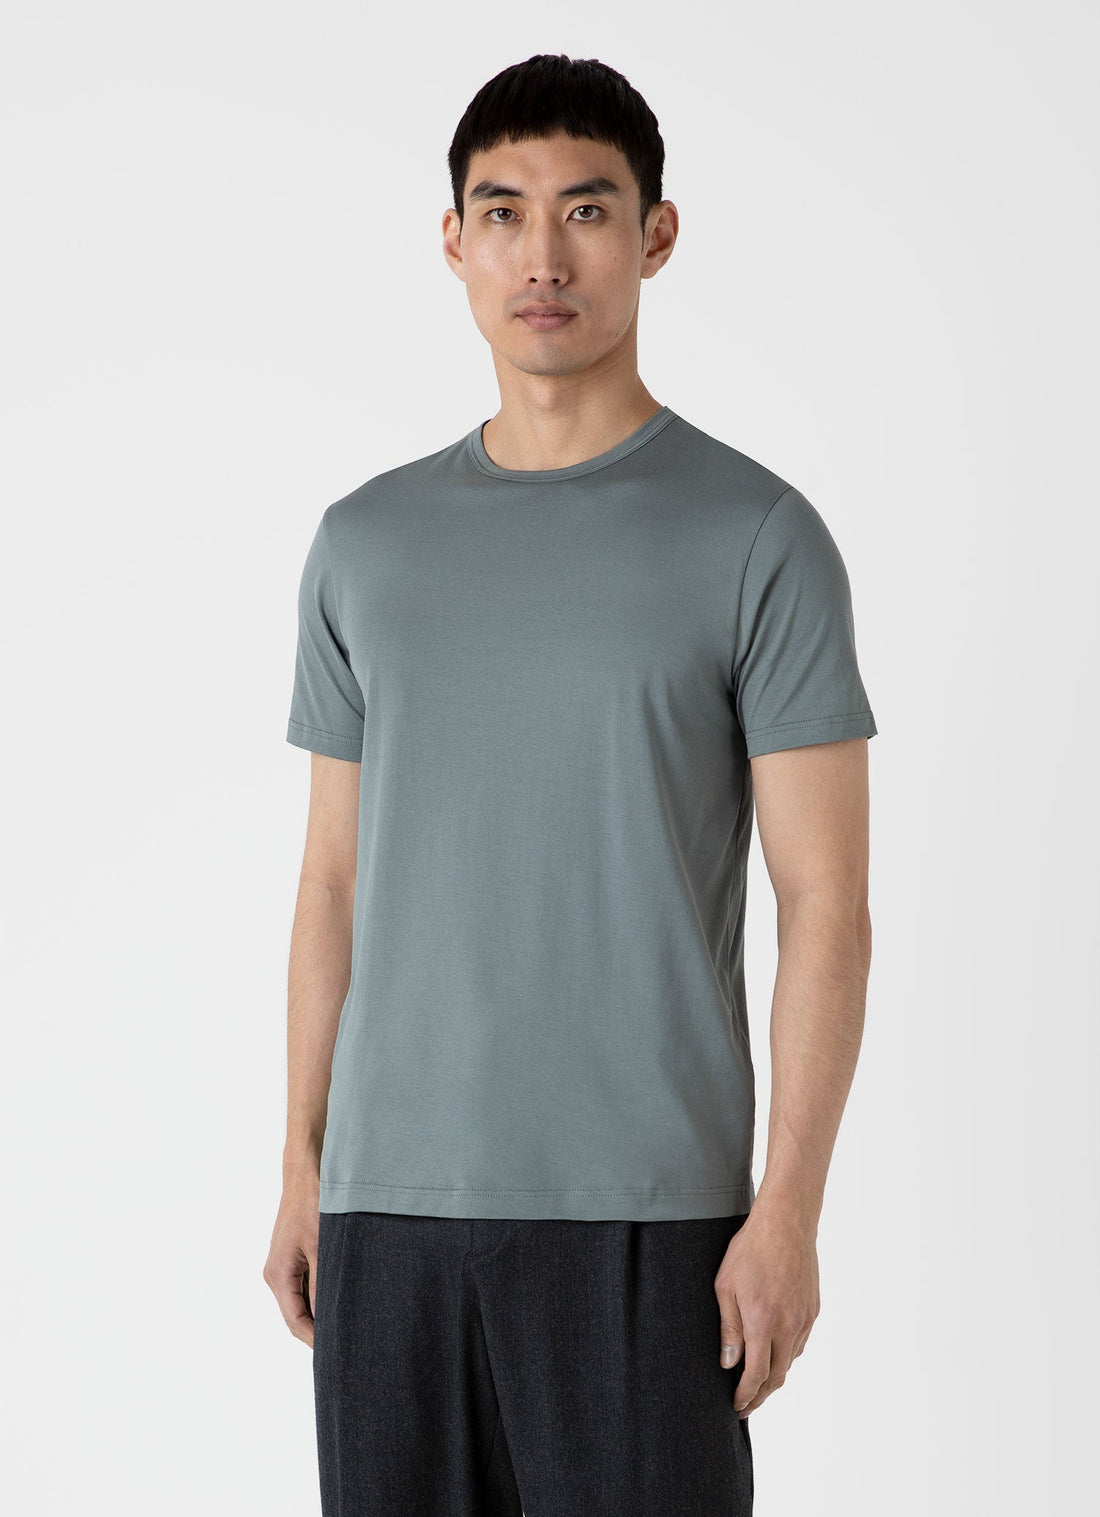 Men's Classic T-shirt in Smoke Green